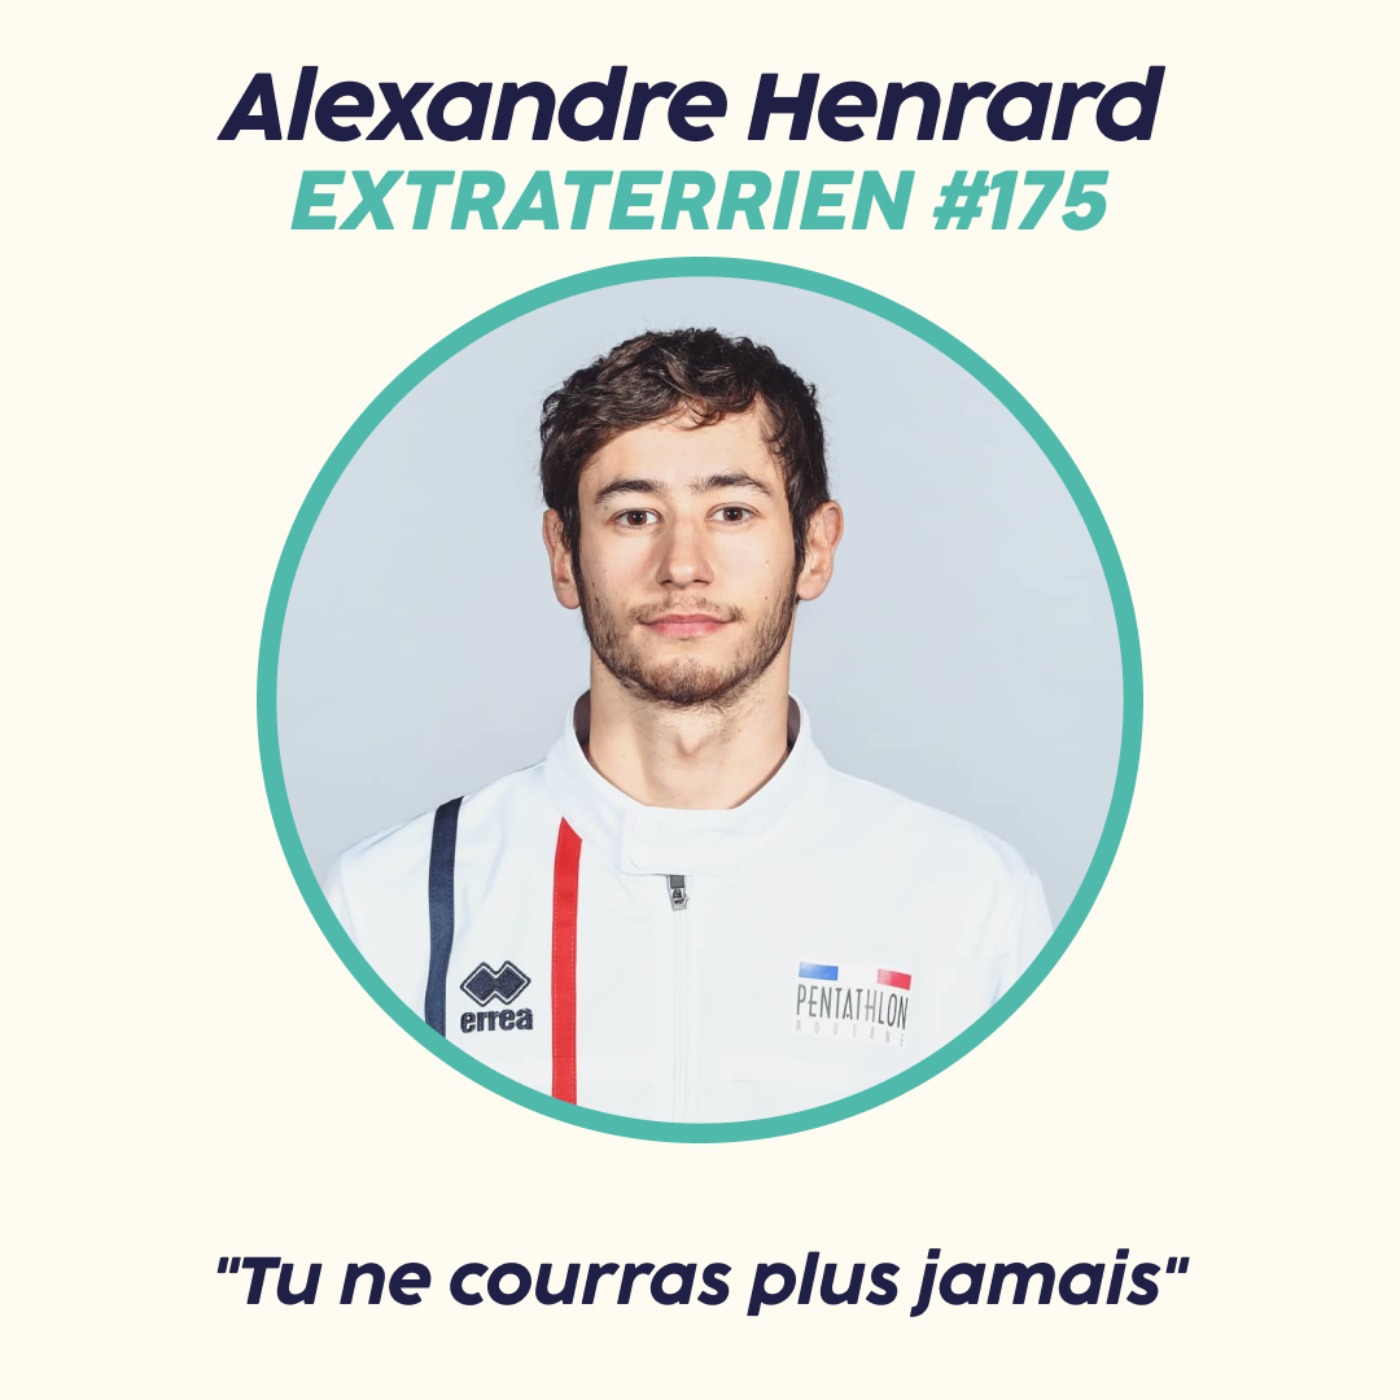 Alexandre Henrard - ”Tu ne courras plus jamais”